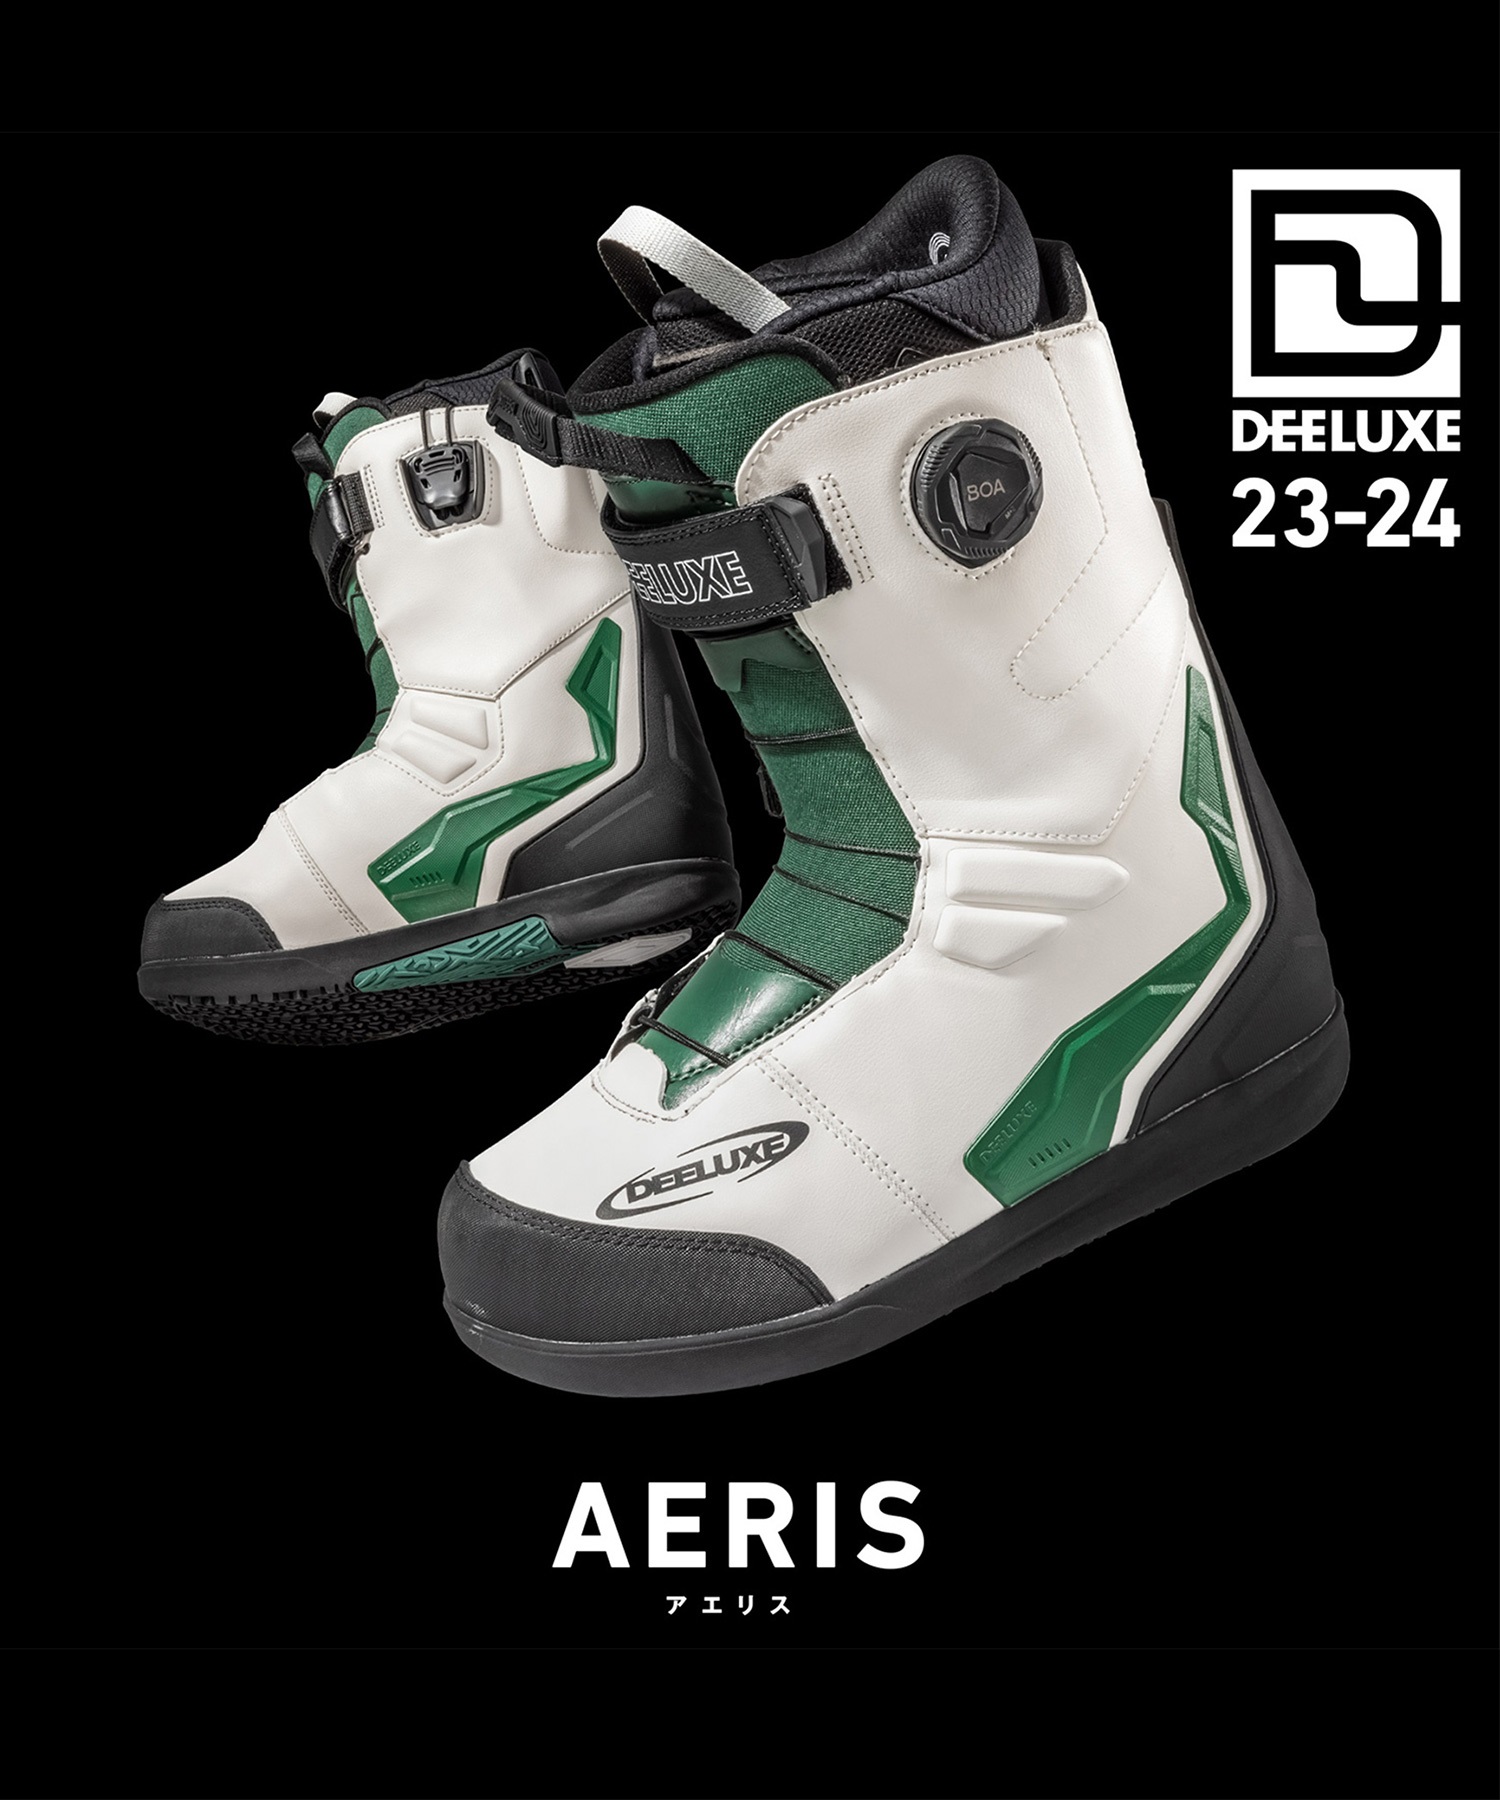 23-24 DEELUXE AERIS 26.5cm スノーボードブーツ - スノーボード